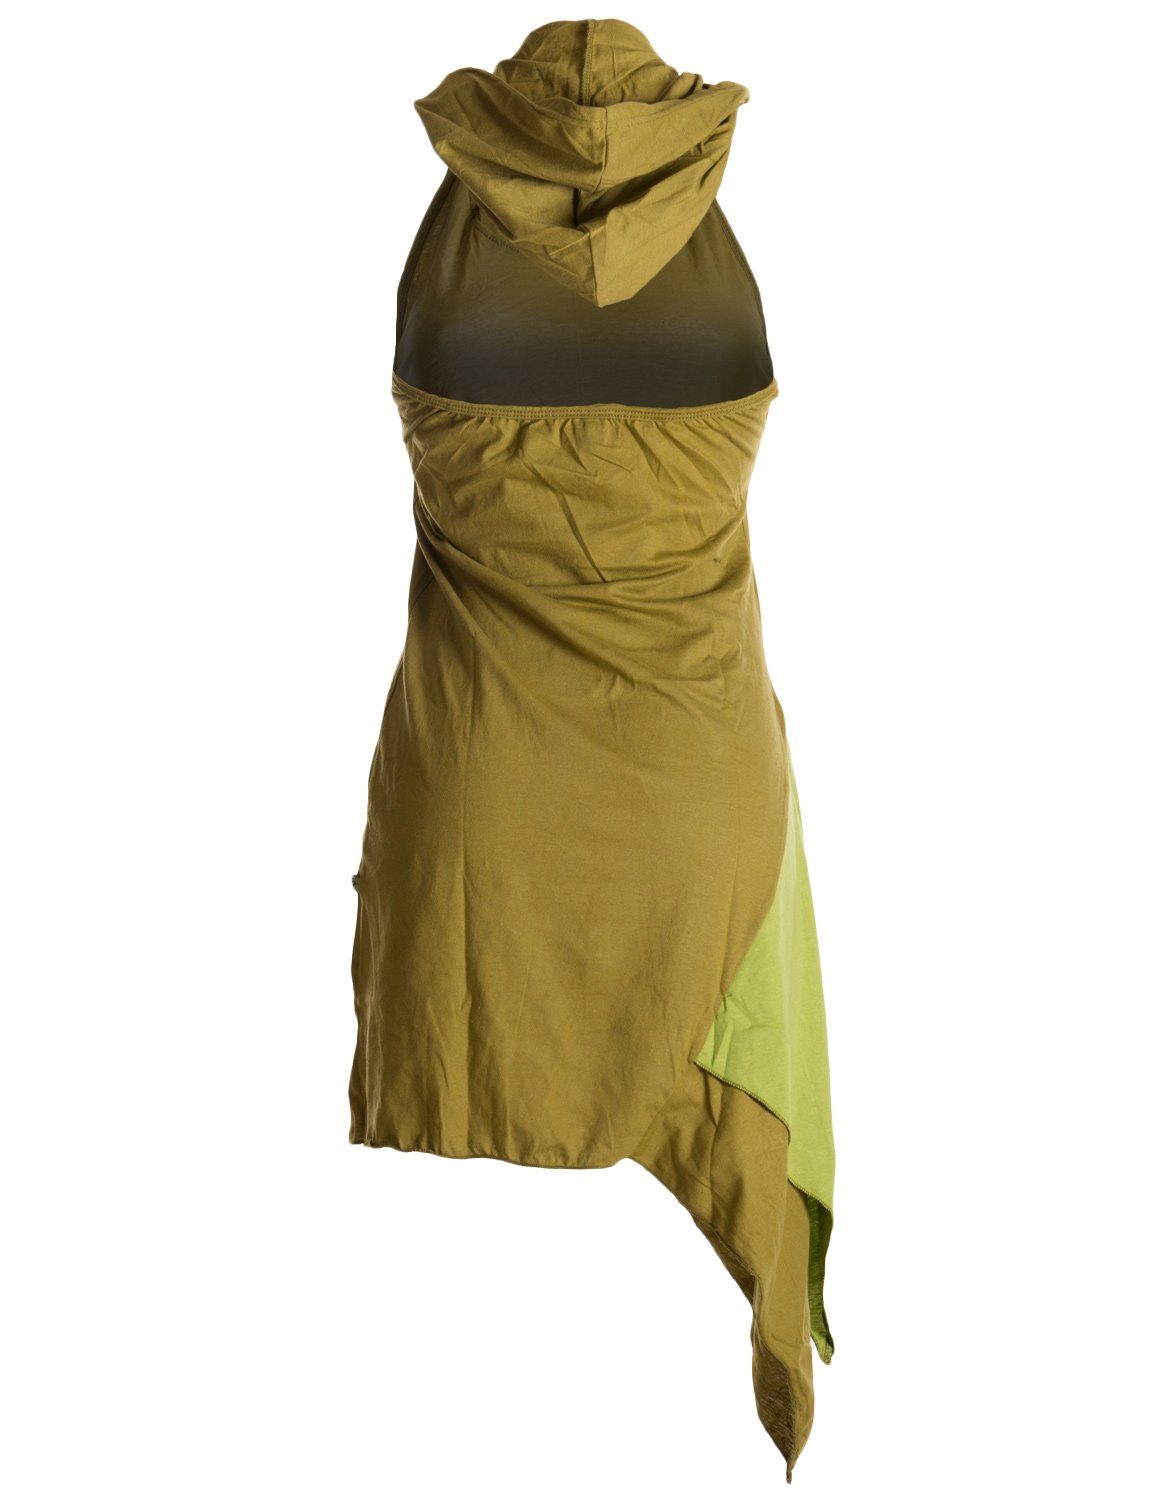 Vishes Neckholderkleid Asymmetrisches Elfen Style olive Boho, Ethno, Hippie, Zipfeltunika Neckholder Lagenlook